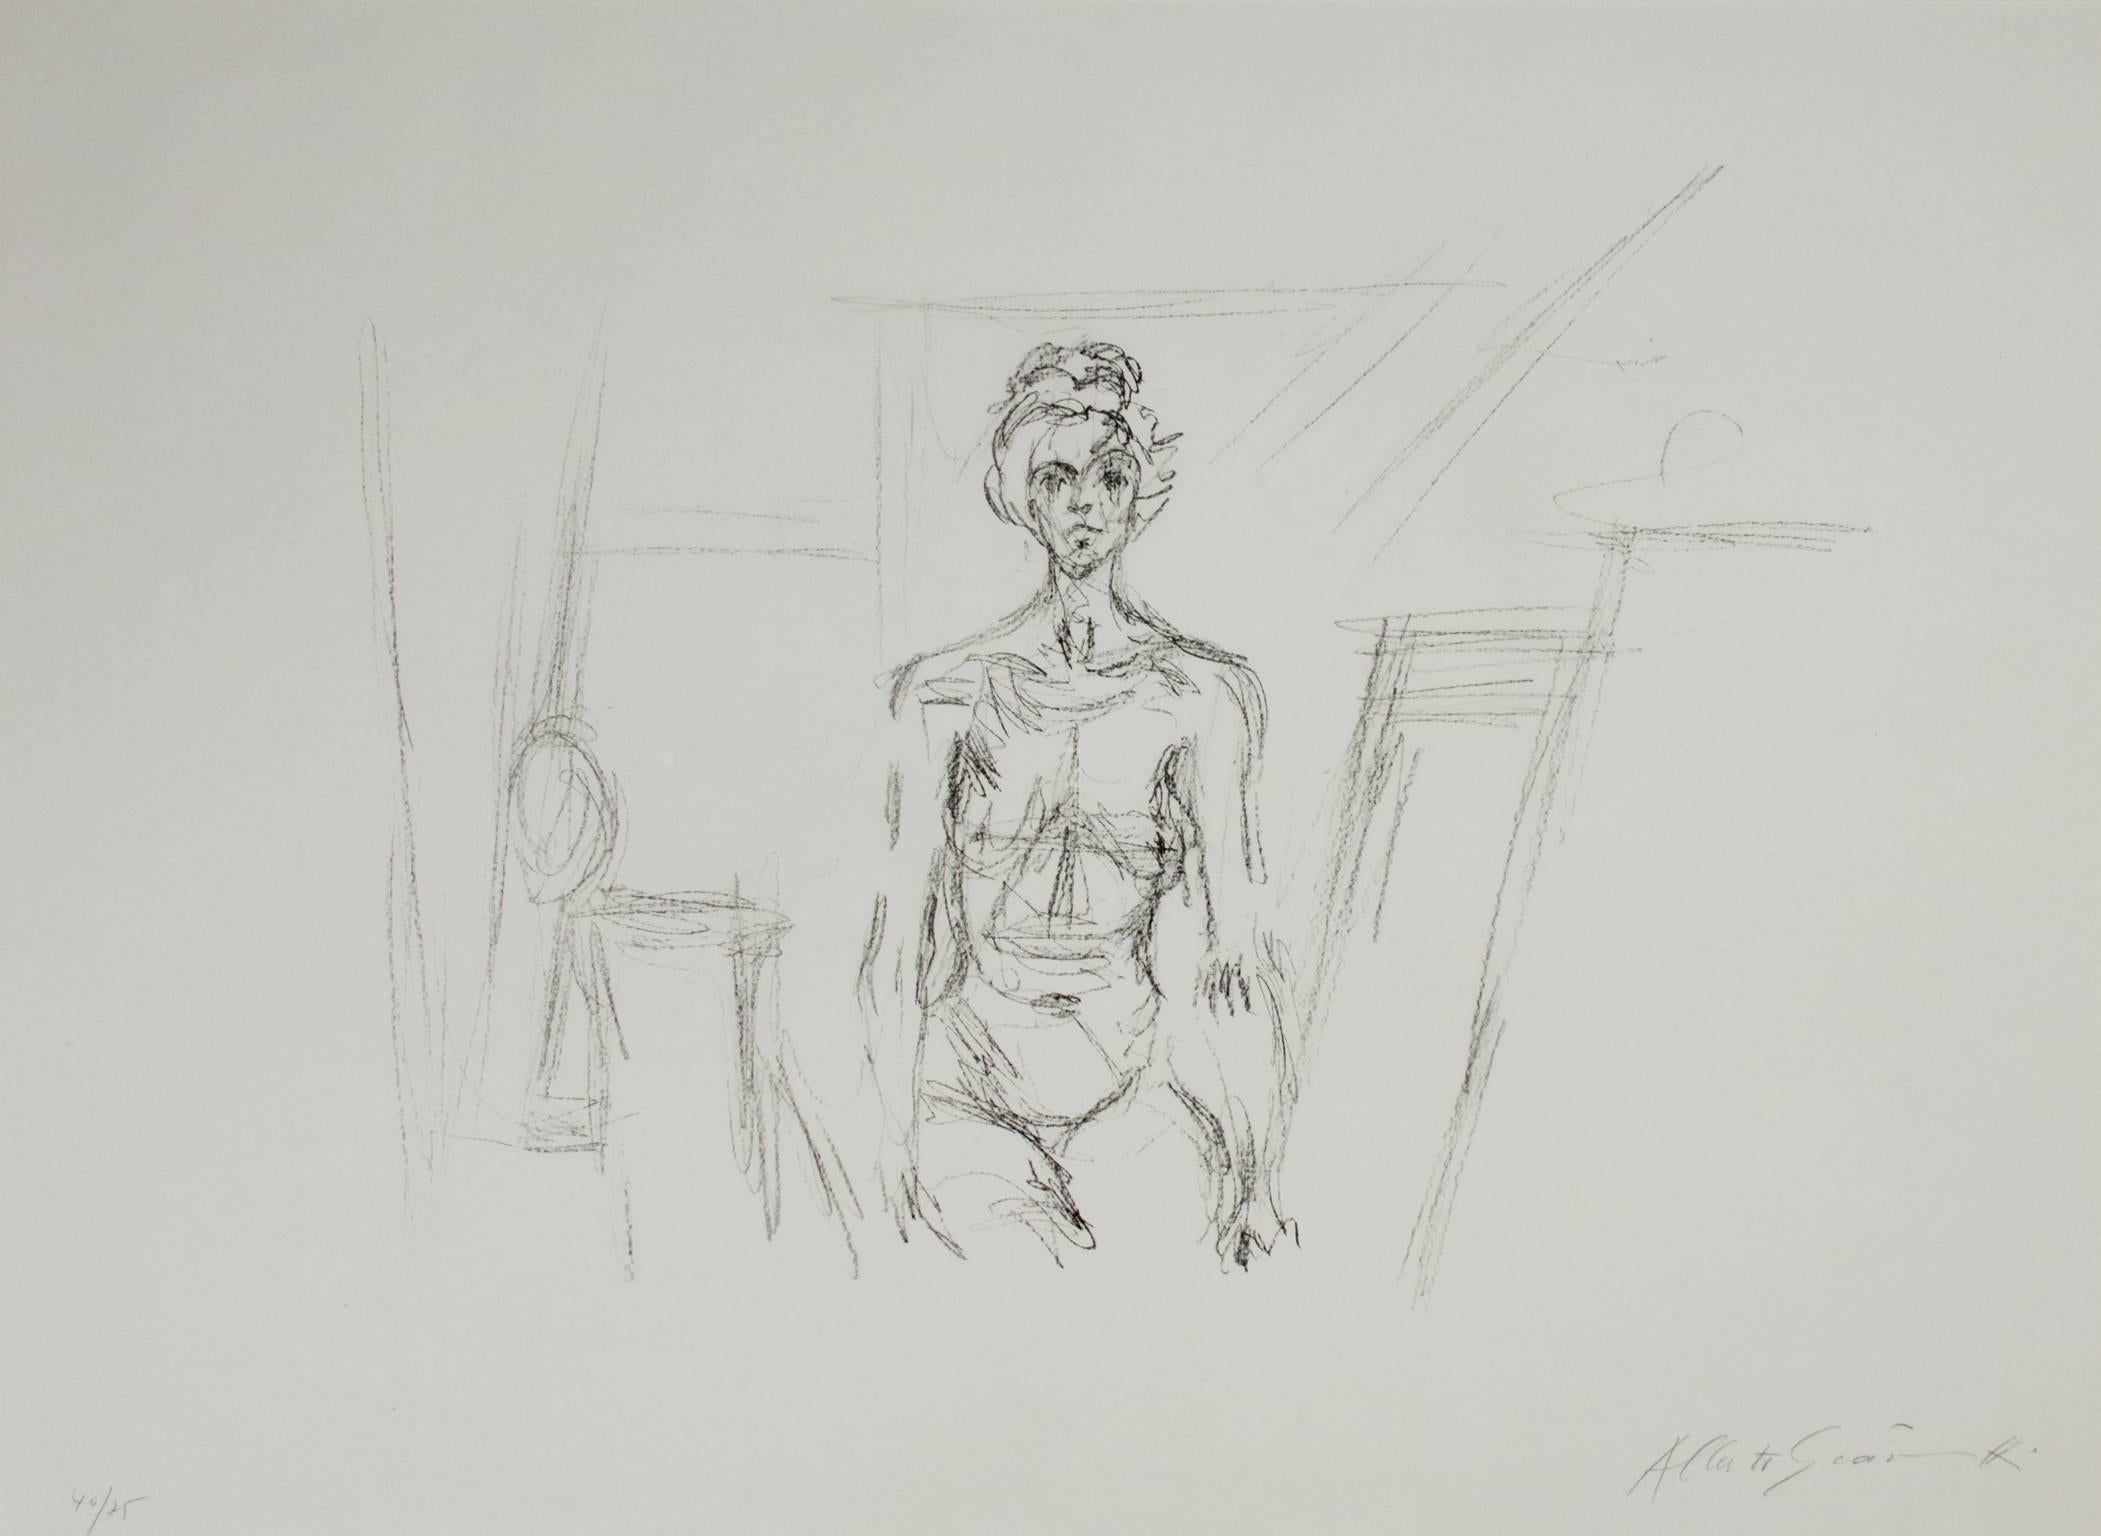 Nu Assis" d'Alberto Giacometti, nu assis, est une lithographie originale numérotée 40 sur 75. Elle date de 1961 et est signée en bas à droite. 

22" x 30" art
31 1/4" x 39 1/4" encadré

"La remarquable carrière d'Alberto Giacometti retrace les